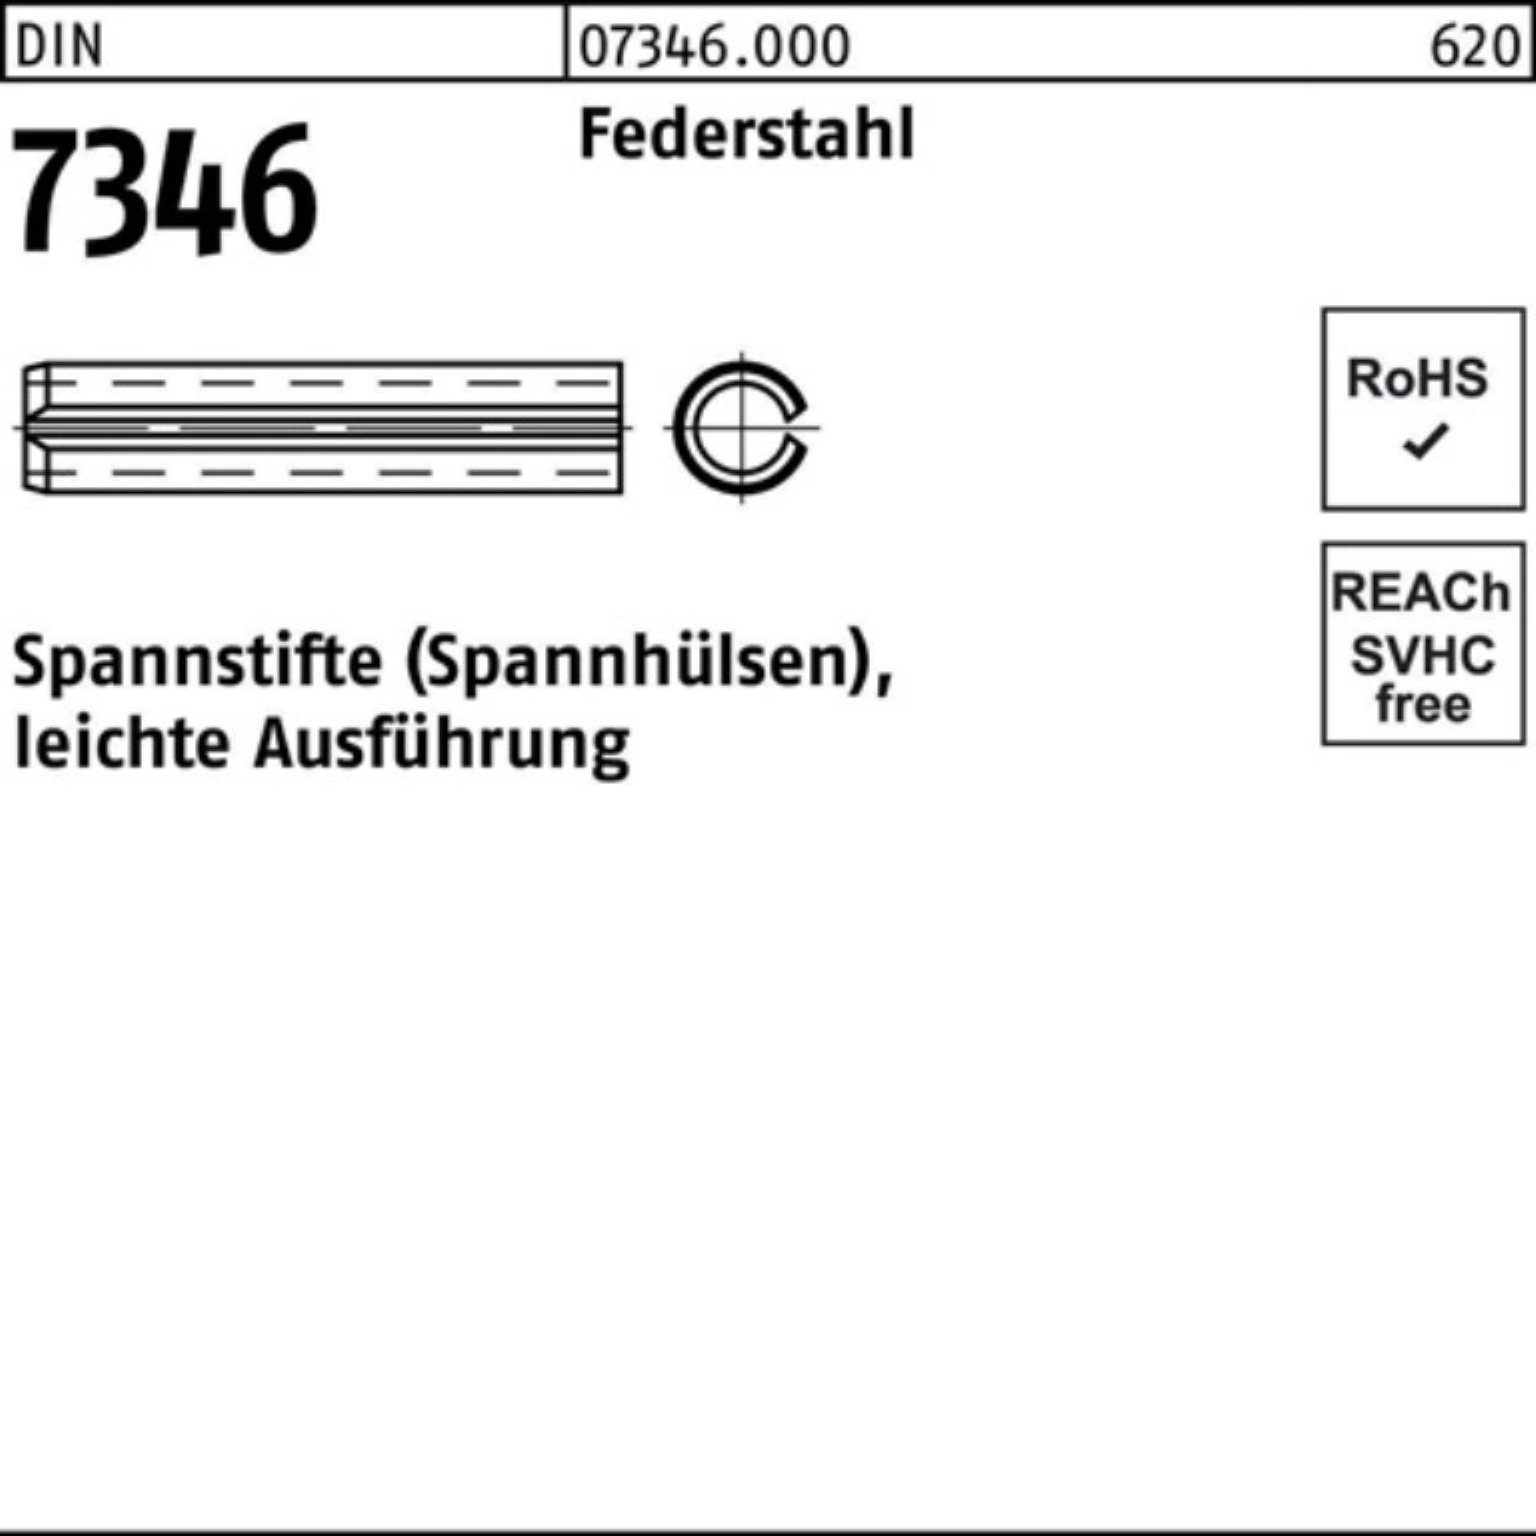 Reyher Spannstift Spannstift 45 Pack leichte 13337 DIN 100er Aus 21x 7346/ISO Federstahl